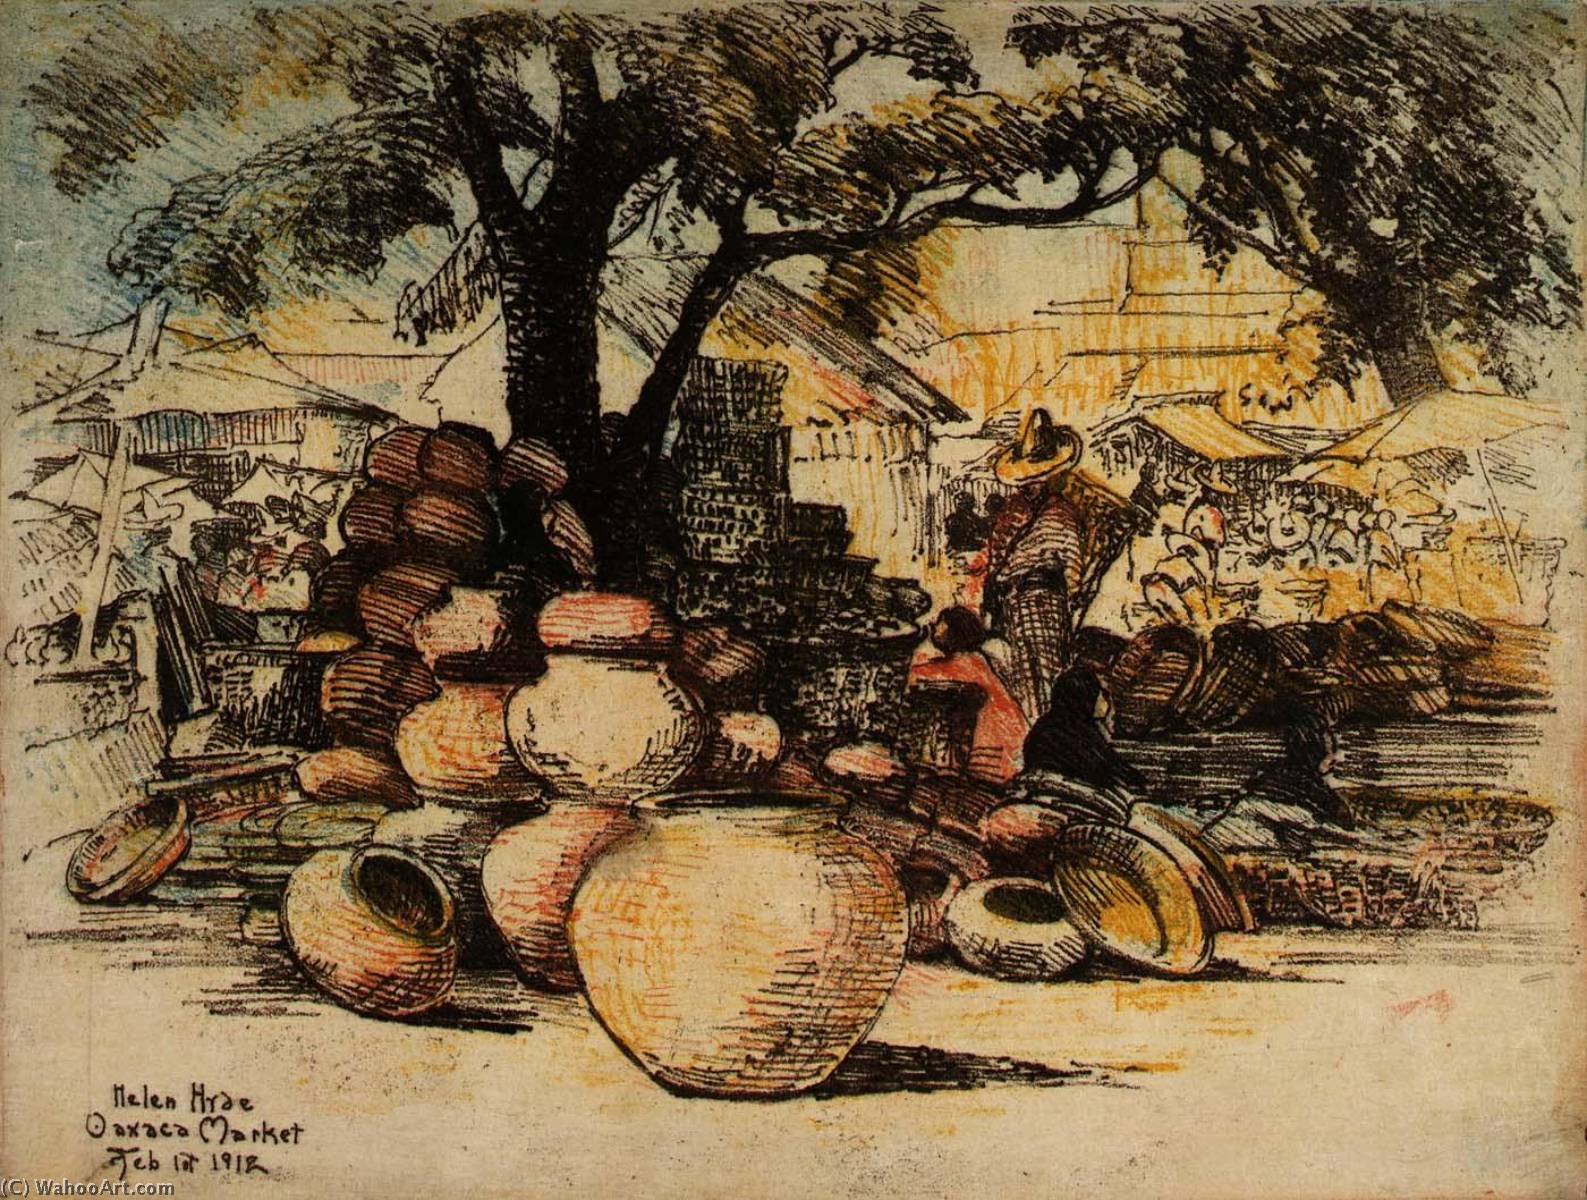 WikiOO.org - Encyclopedia of Fine Arts - Malba, Artwork Helen Hyde - Oaxaca Market